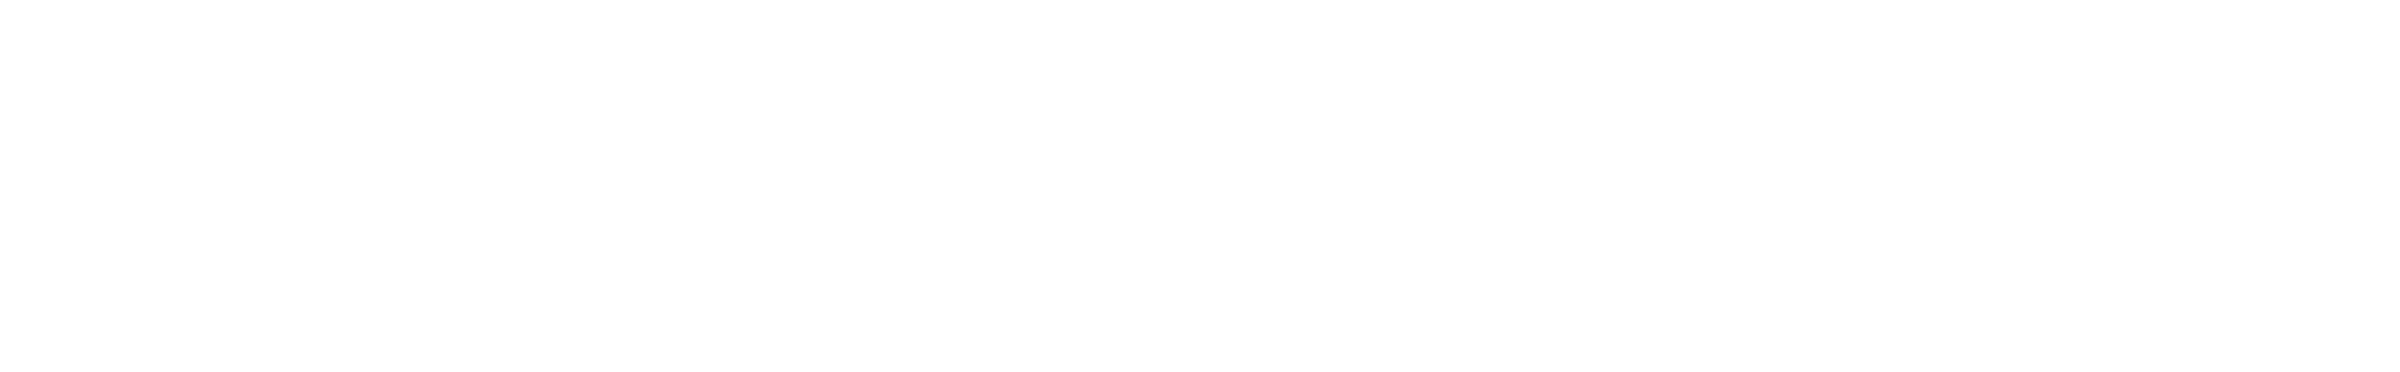 NA-KD Logo